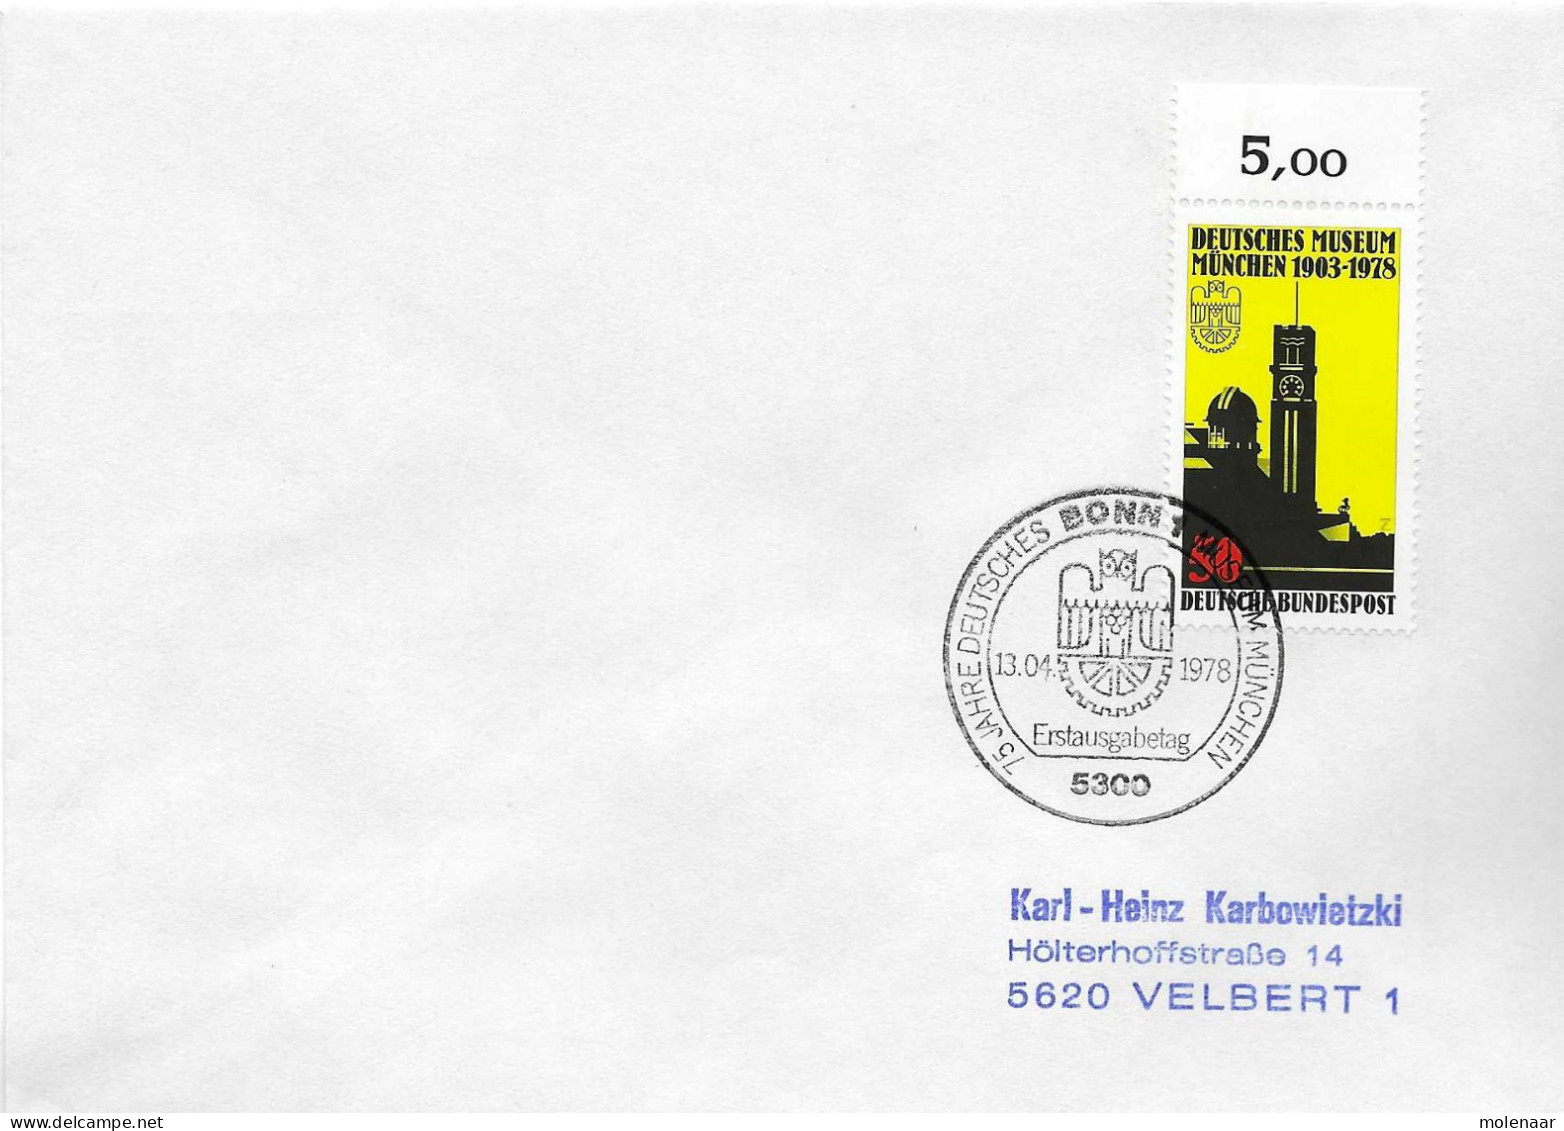 Postzegels > Europa > Duitsland > West-Duitsland > 1970-1979 > Brief Met No. 963 (17372) - Lettres & Documents